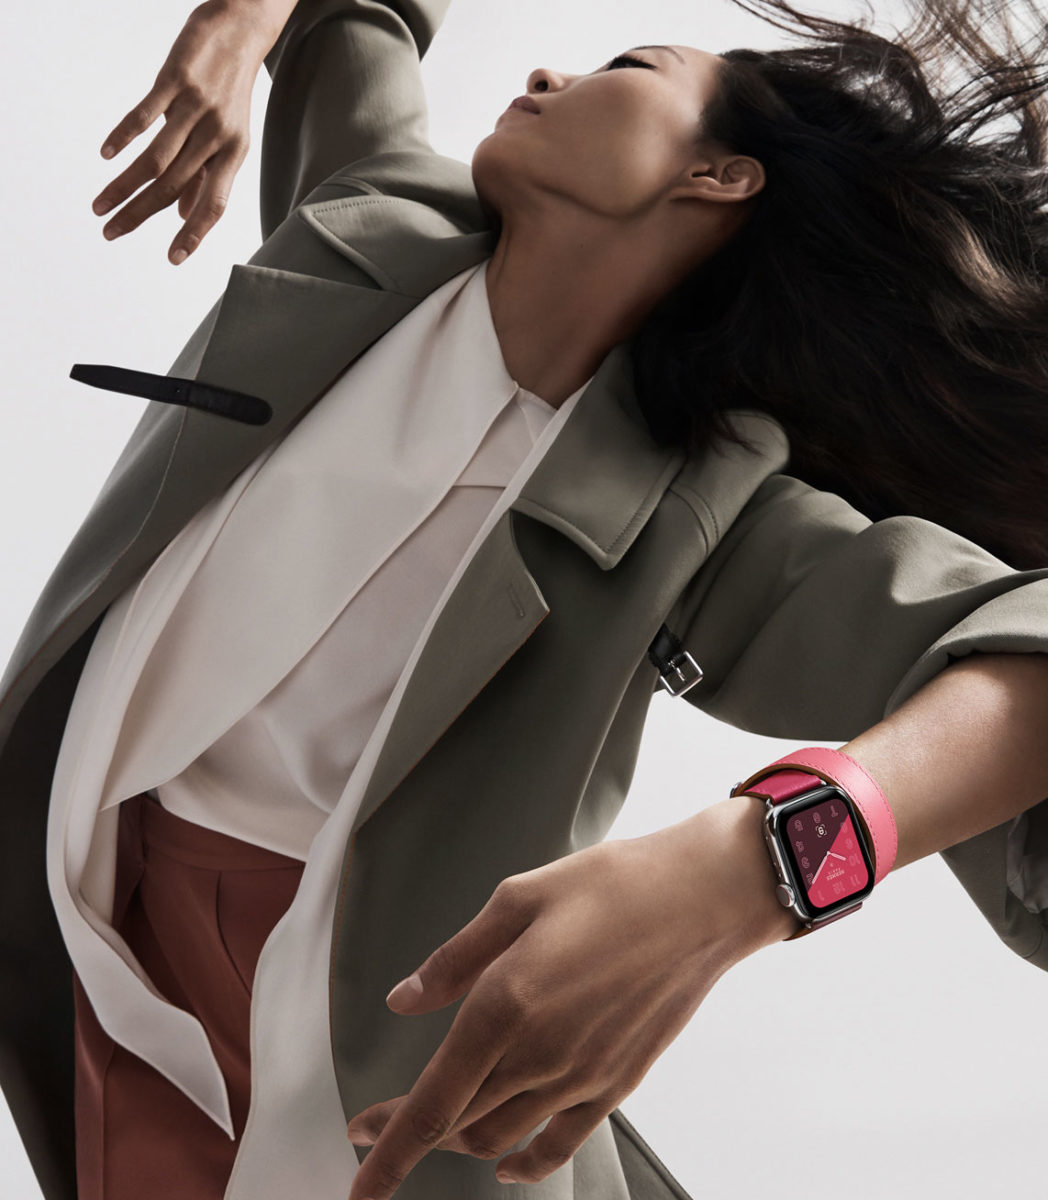 La nuova collezione Apple Watch Hermès introduce un vasto assortimento di cinturini con colori a contrasto.